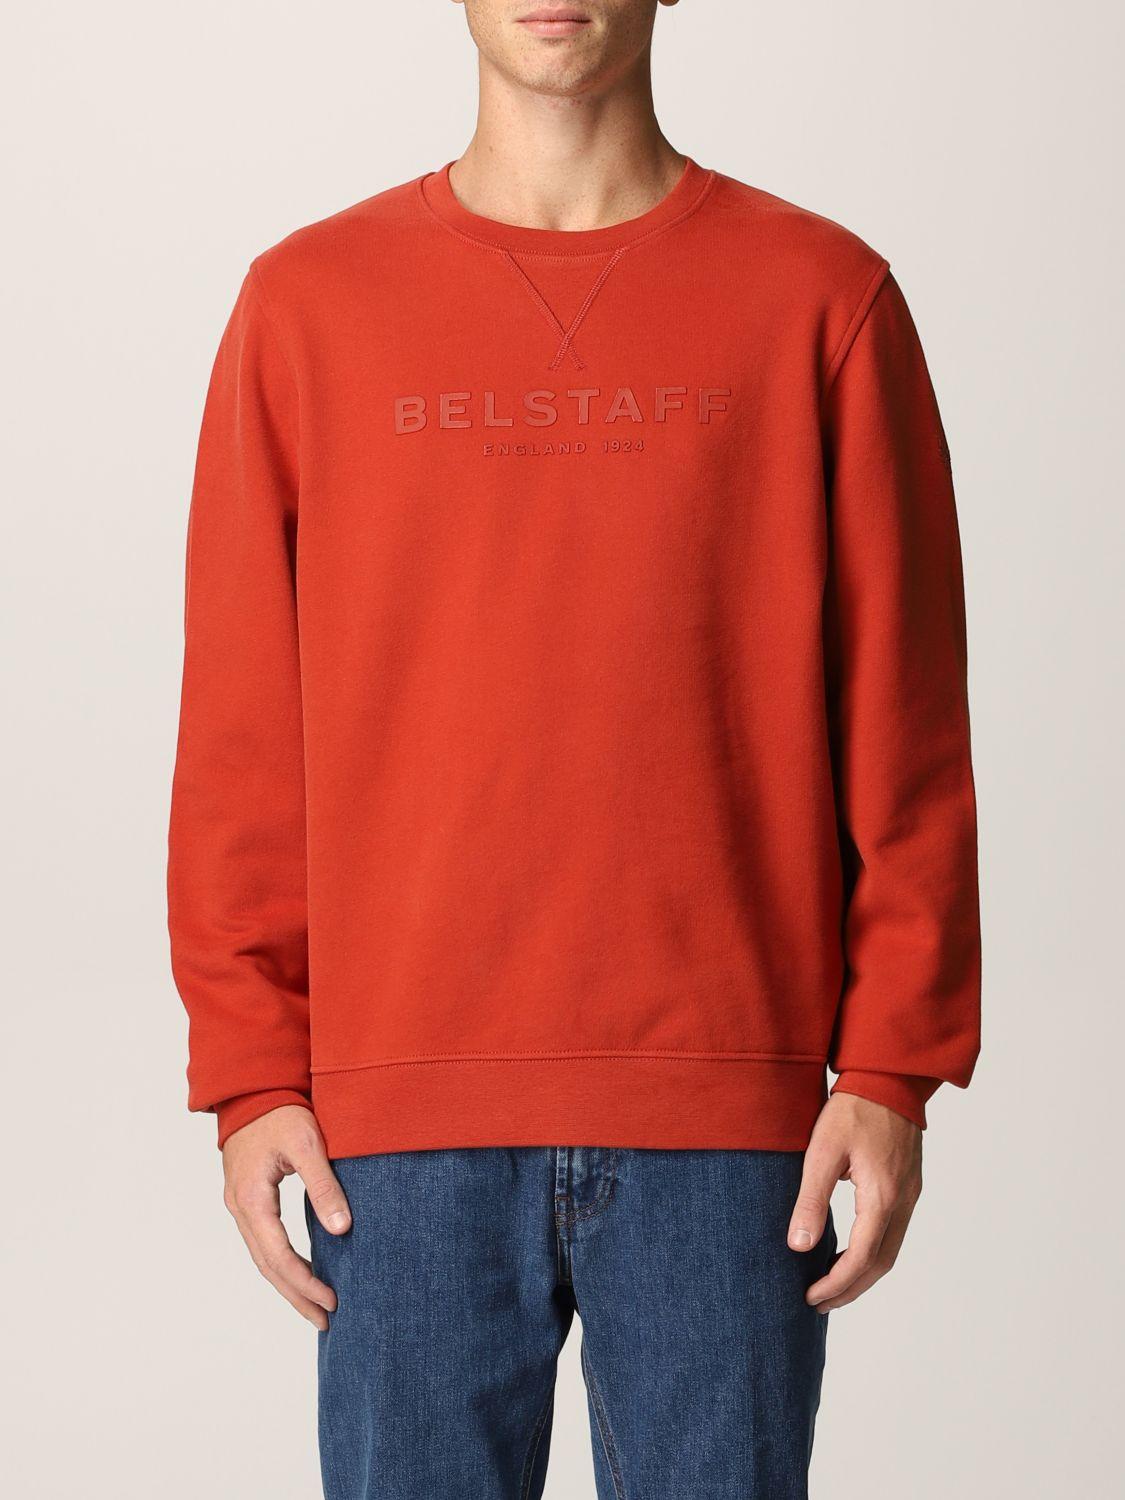 Belstaff Sweatshirt in Red (Black) for Men - Lyst